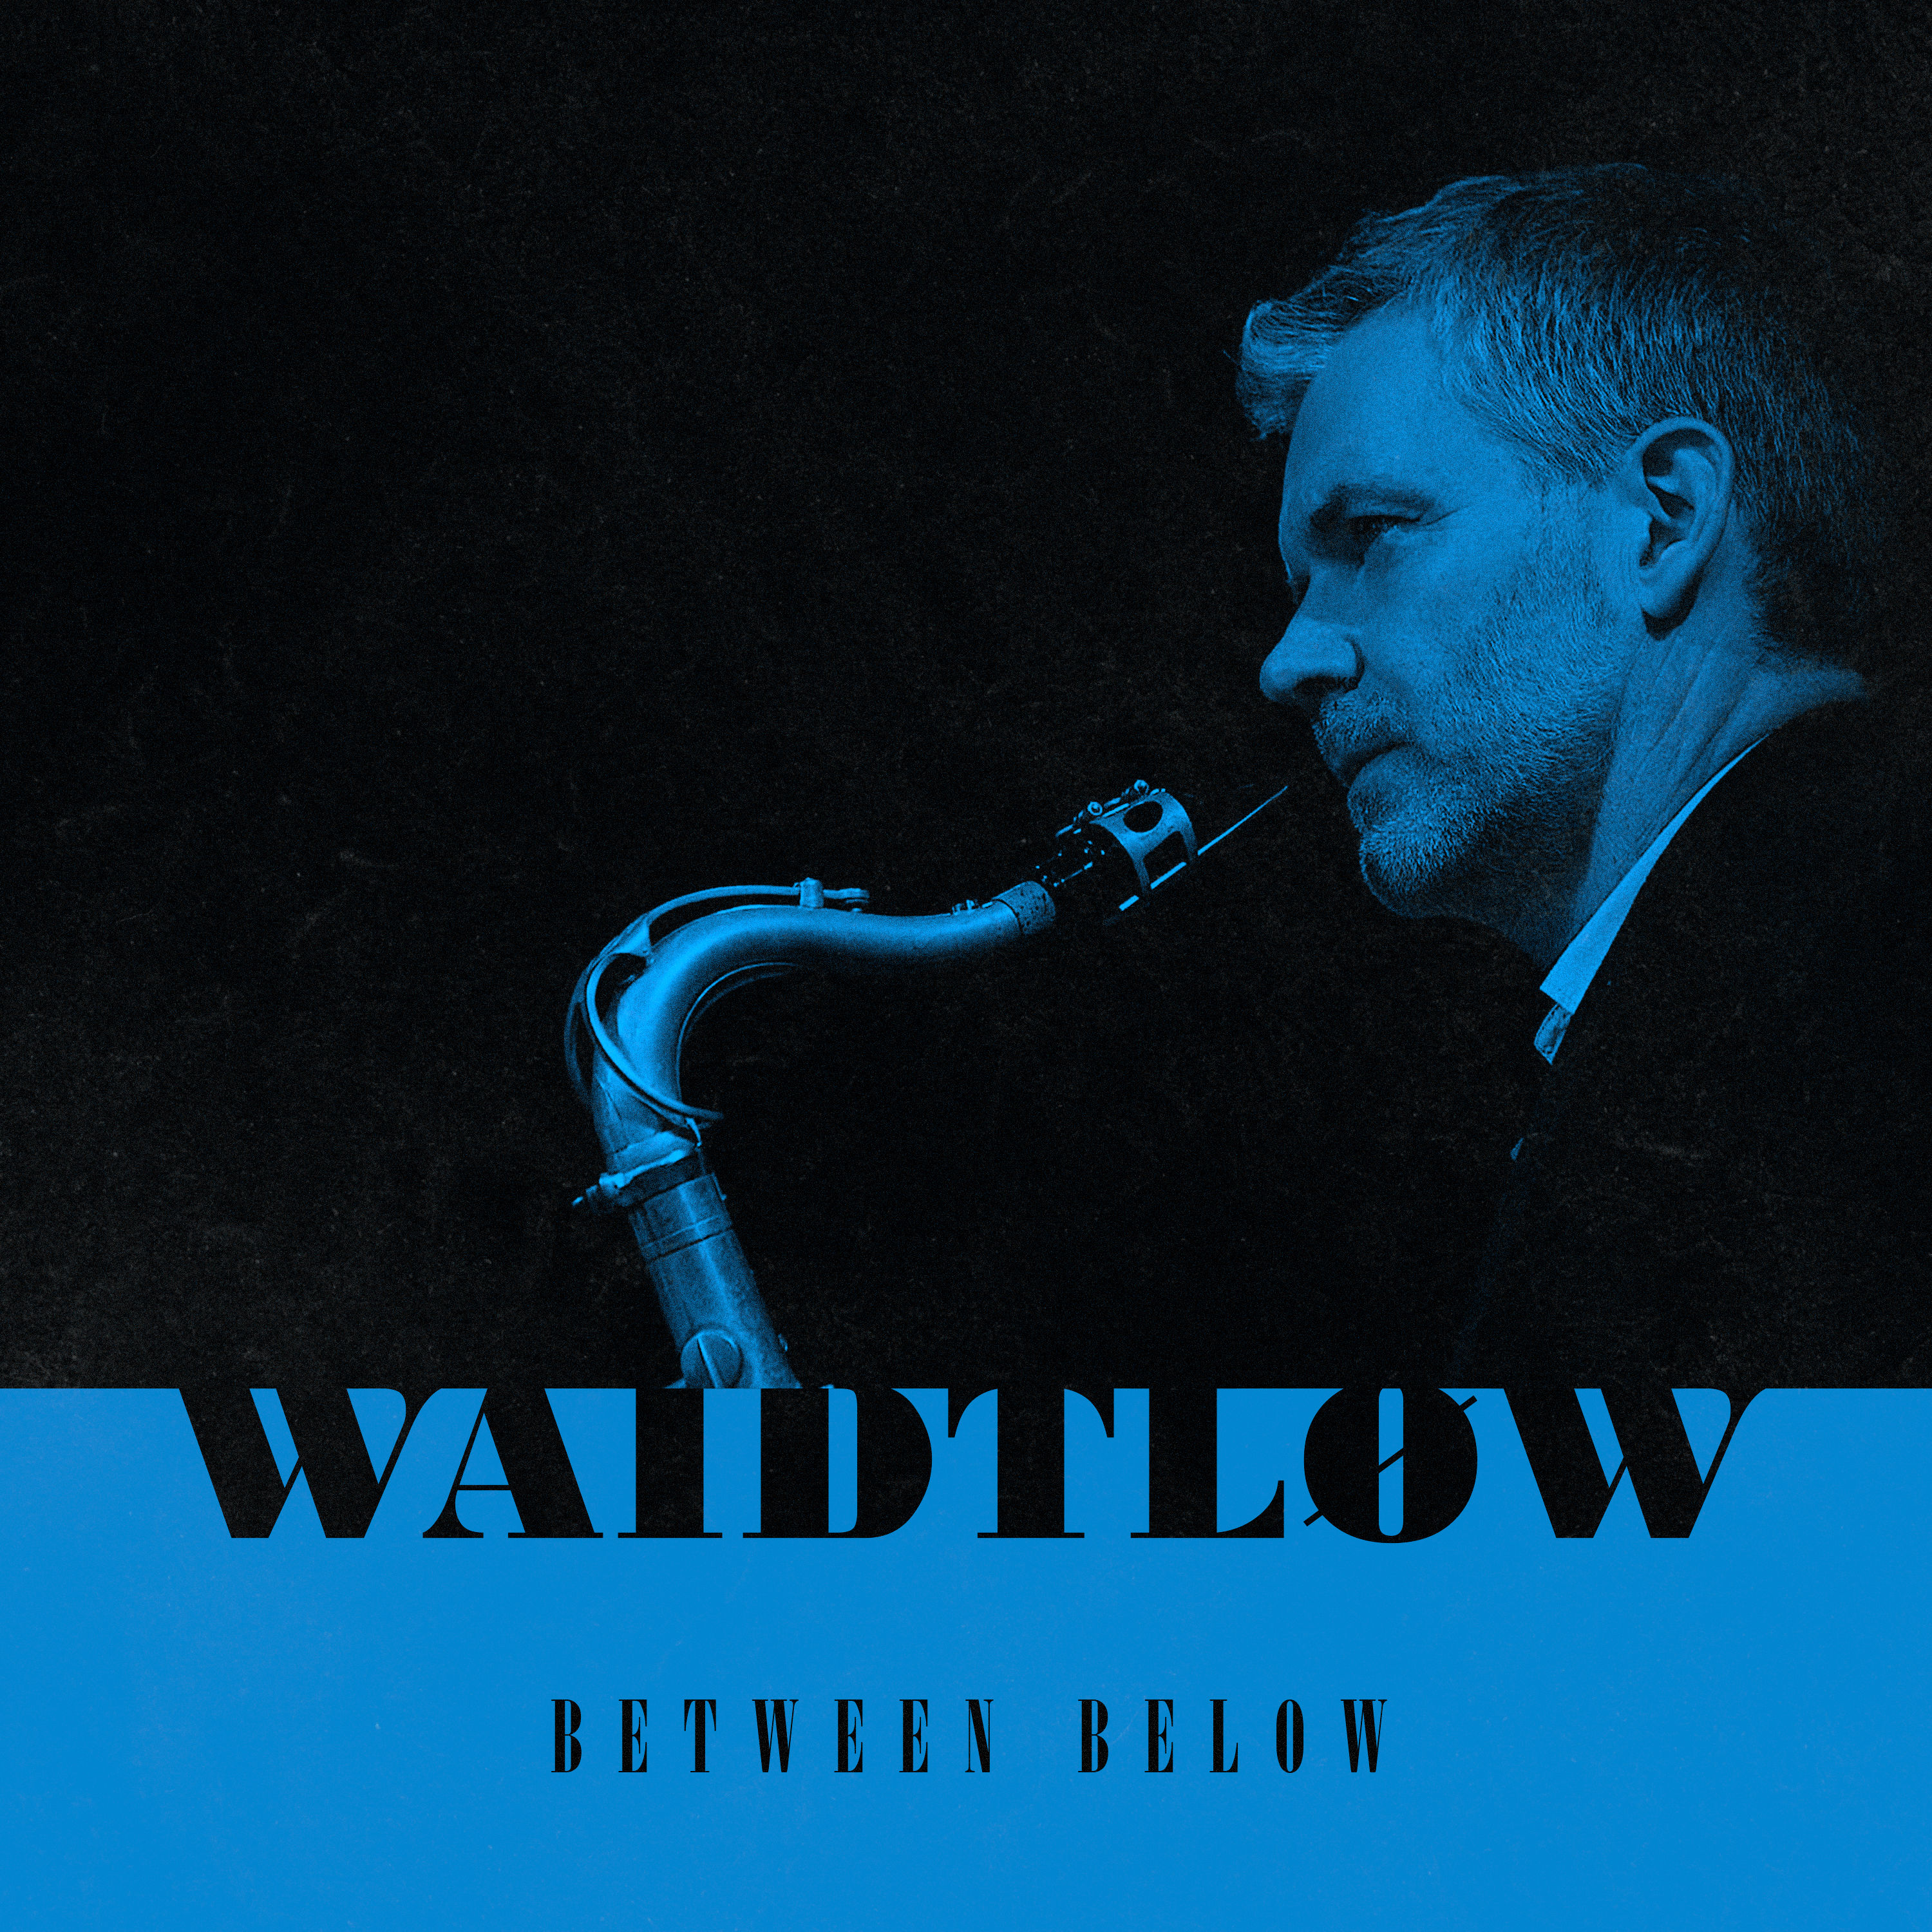 Claus Waidtlow – Between Below (2021) [FLAC 24bit/96kHz]